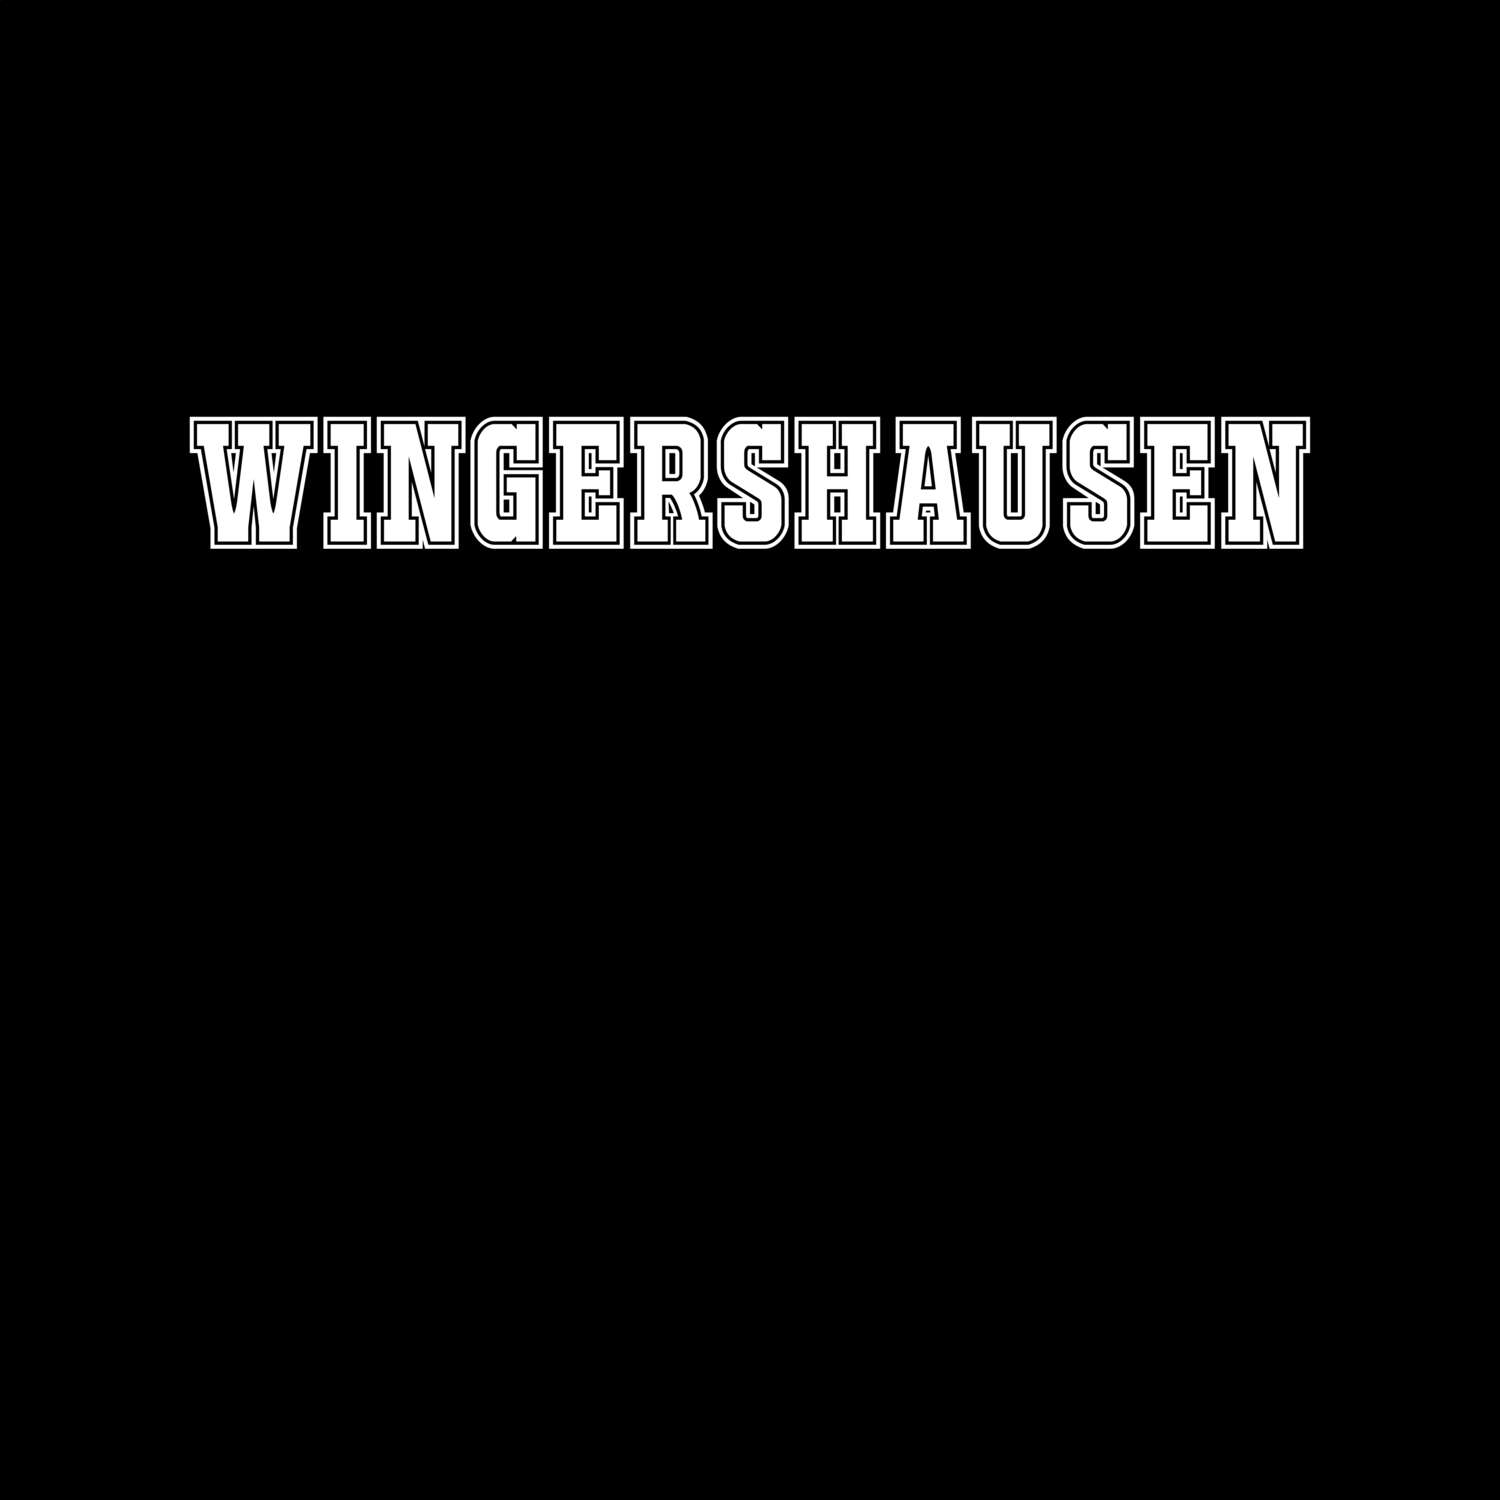 Wingershausen T-Shirt »Classic«